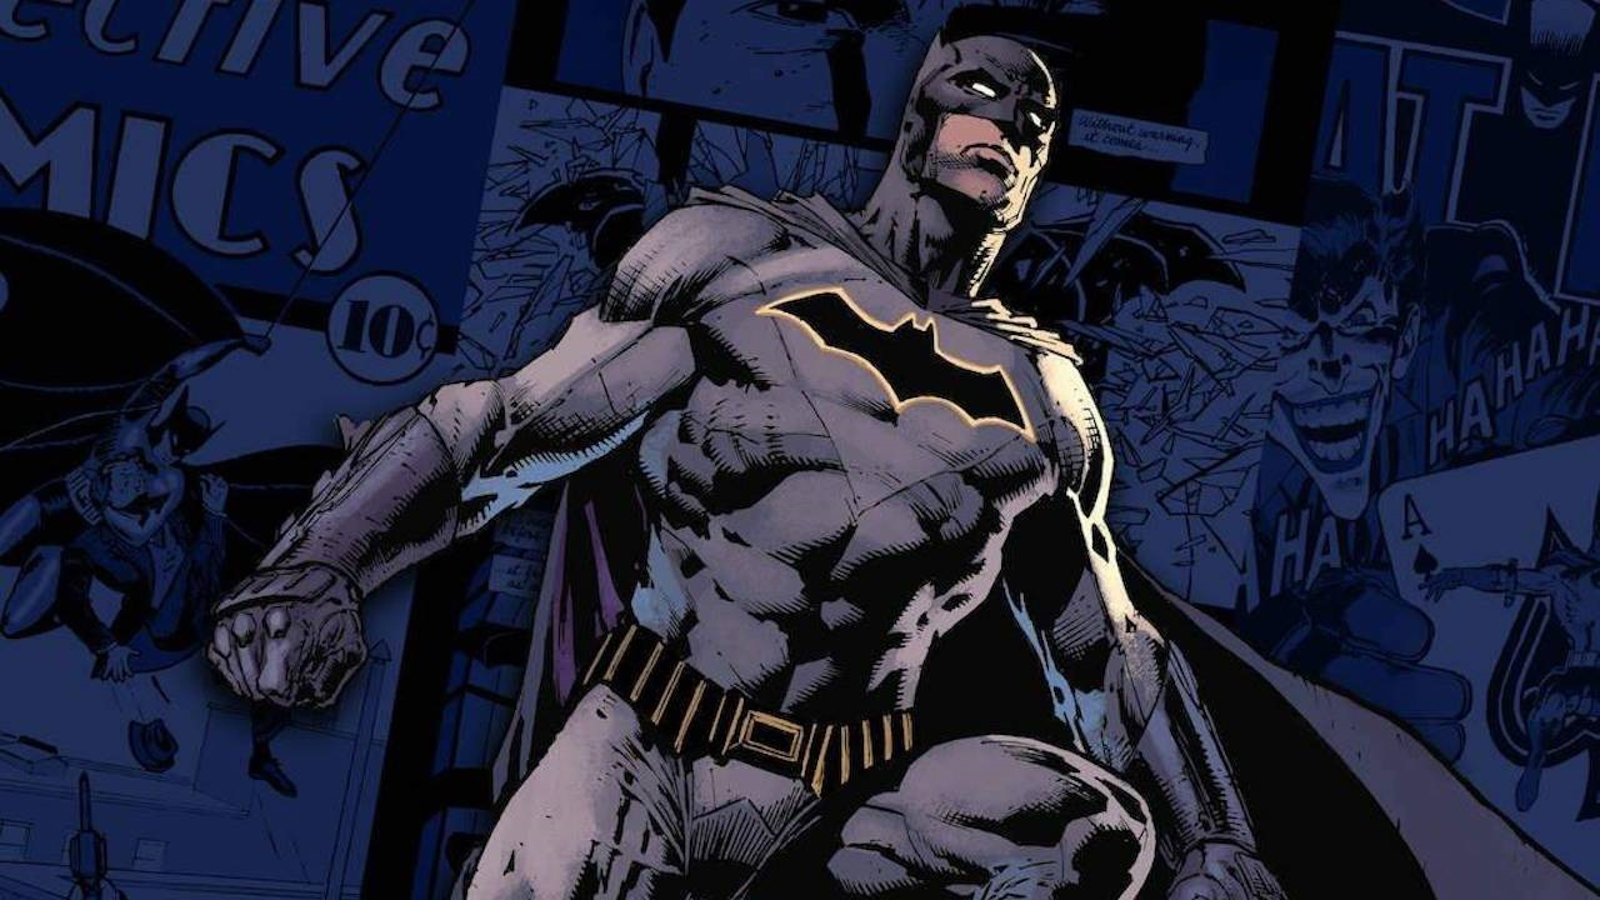 Speciale Batman, tra fumetti, cinema e videogiochi